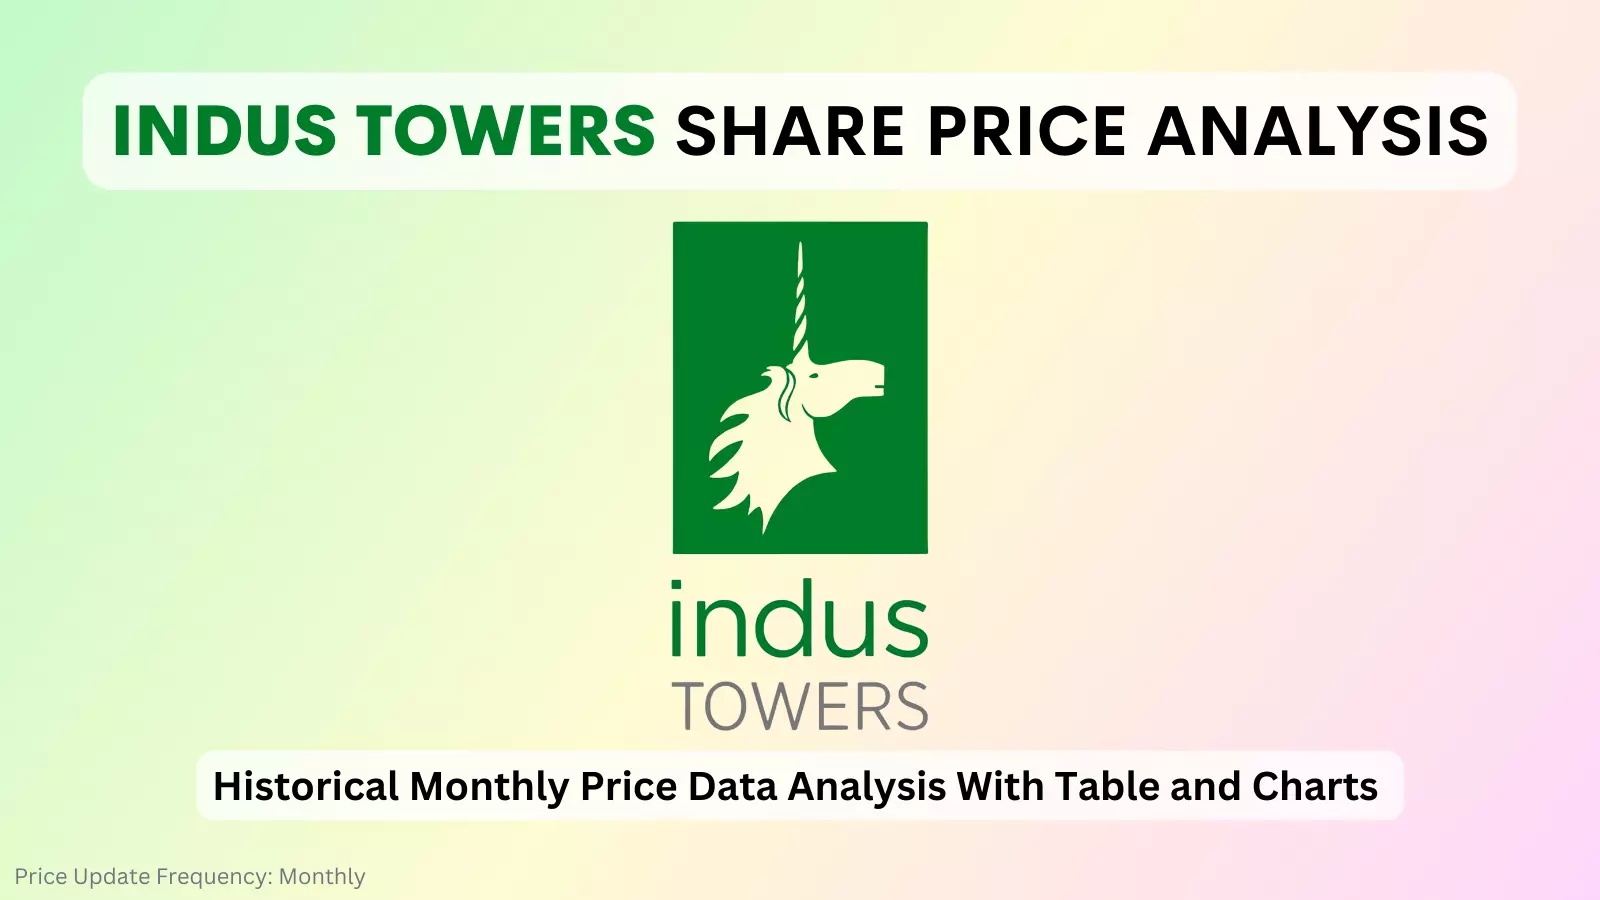 indus towers share price analysis